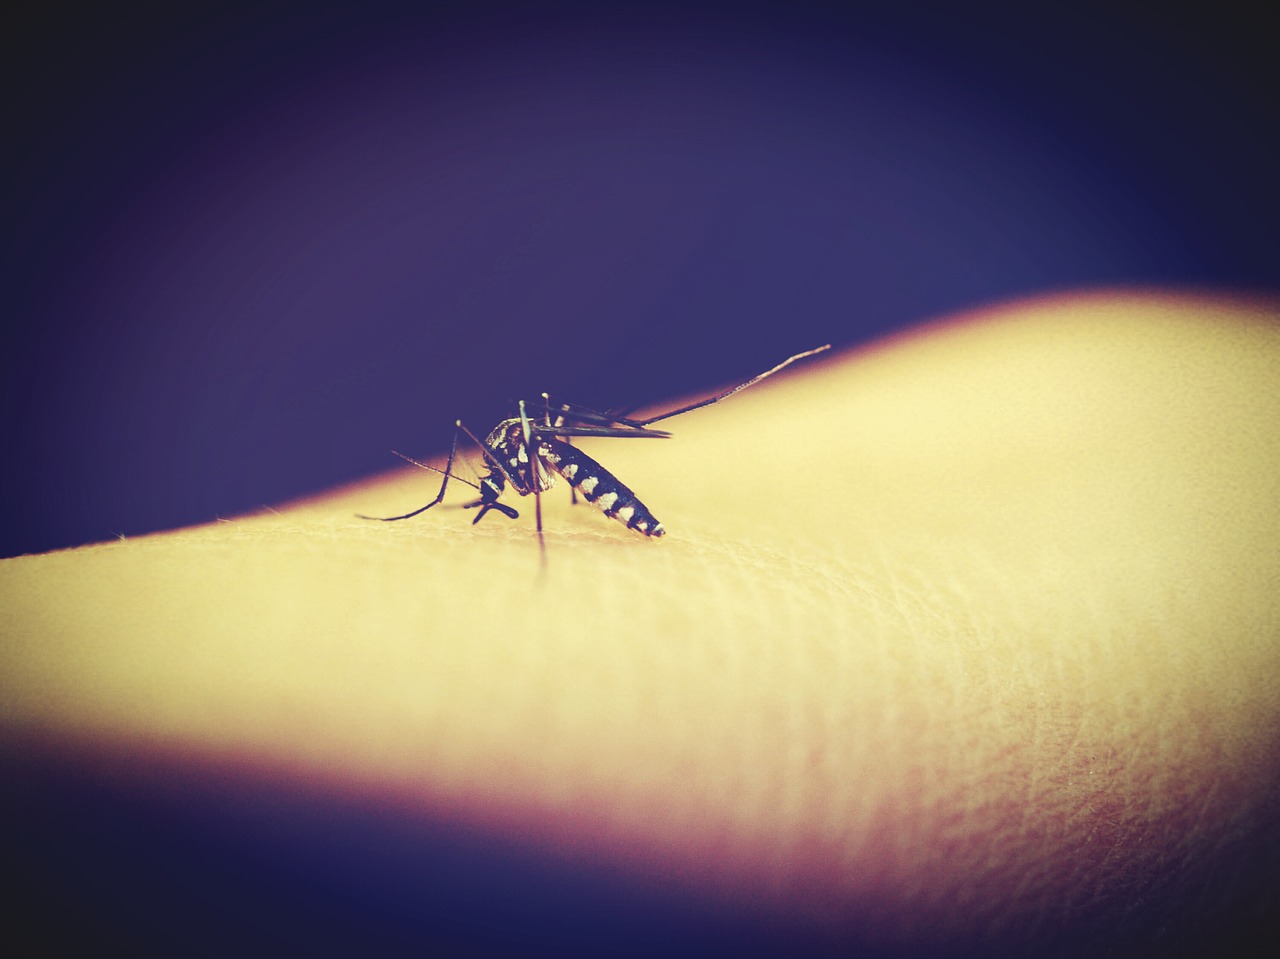 死んだ蚊 写真素材 [ 6345126 ] - フォトライブラリー photolibrary